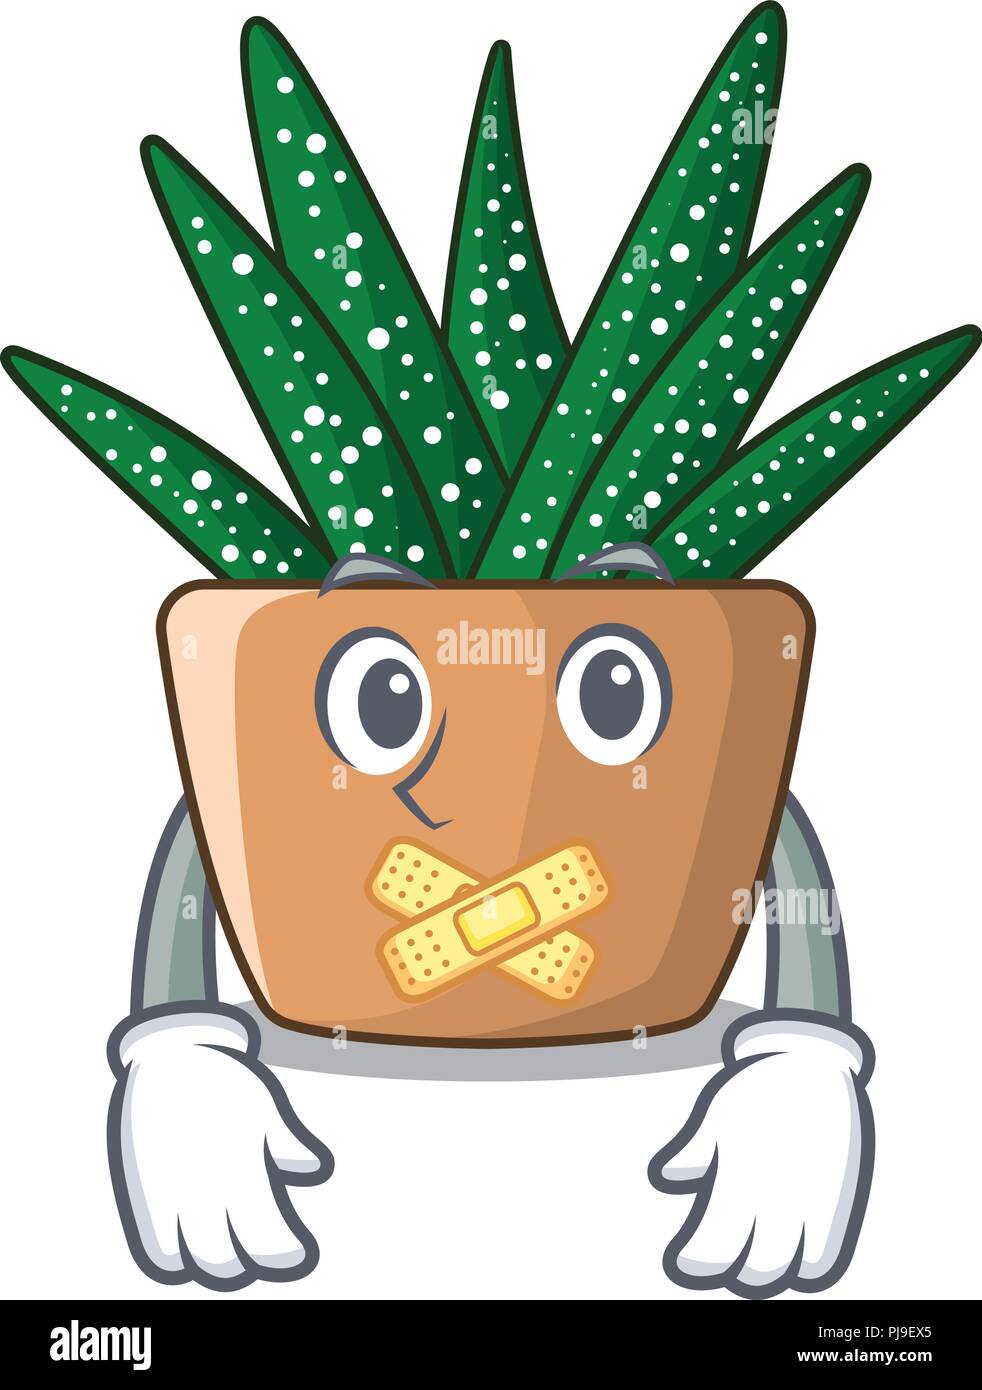 Stillen cartoon zebra Kaktus Anlage im Park Stock Vektor